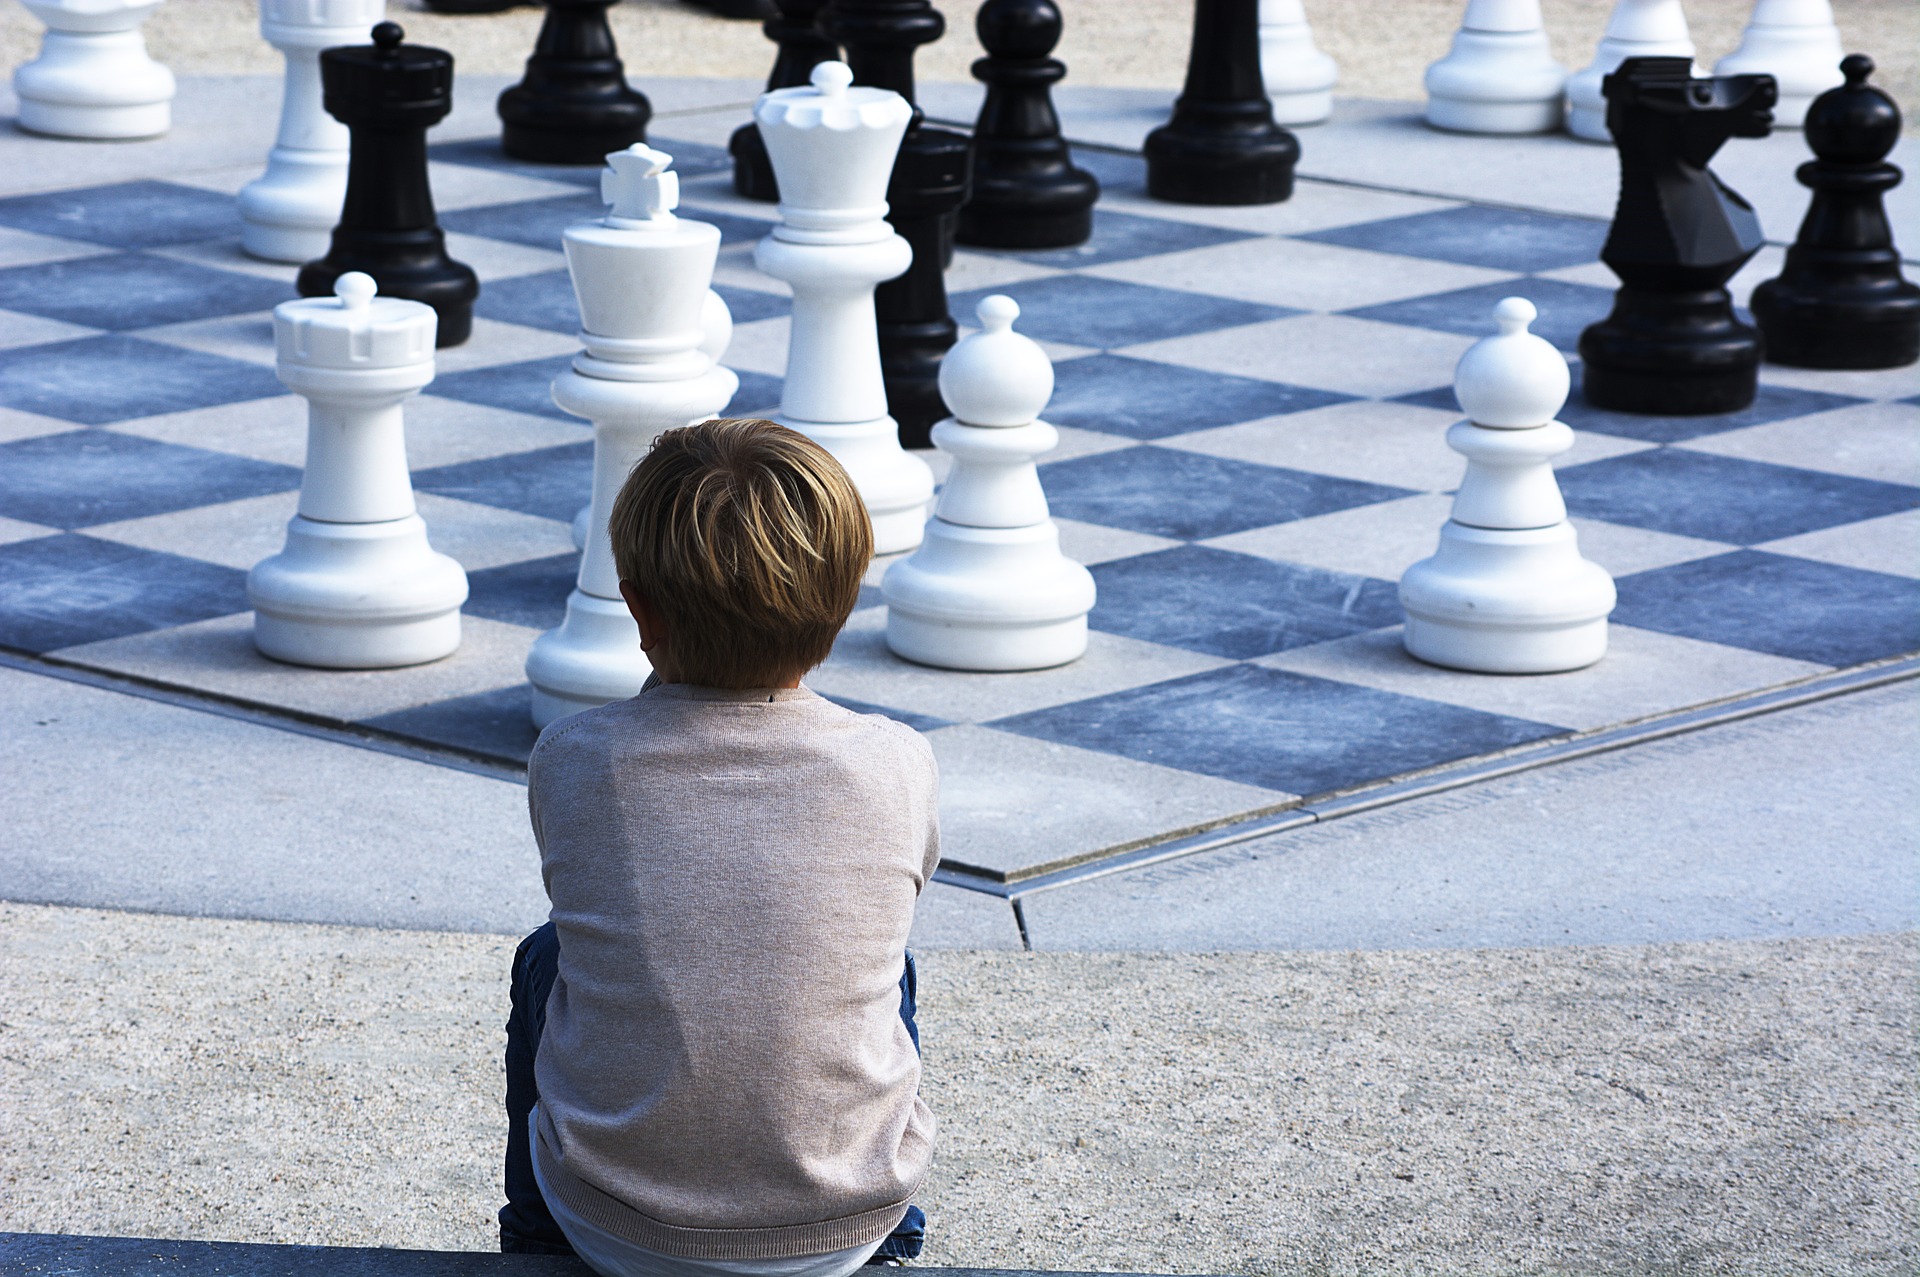 Karjakin ist ein rotes Tuch für die Weltschachgemeinschaft. Interview mit Daniil  Dubov - Schach-Ticker